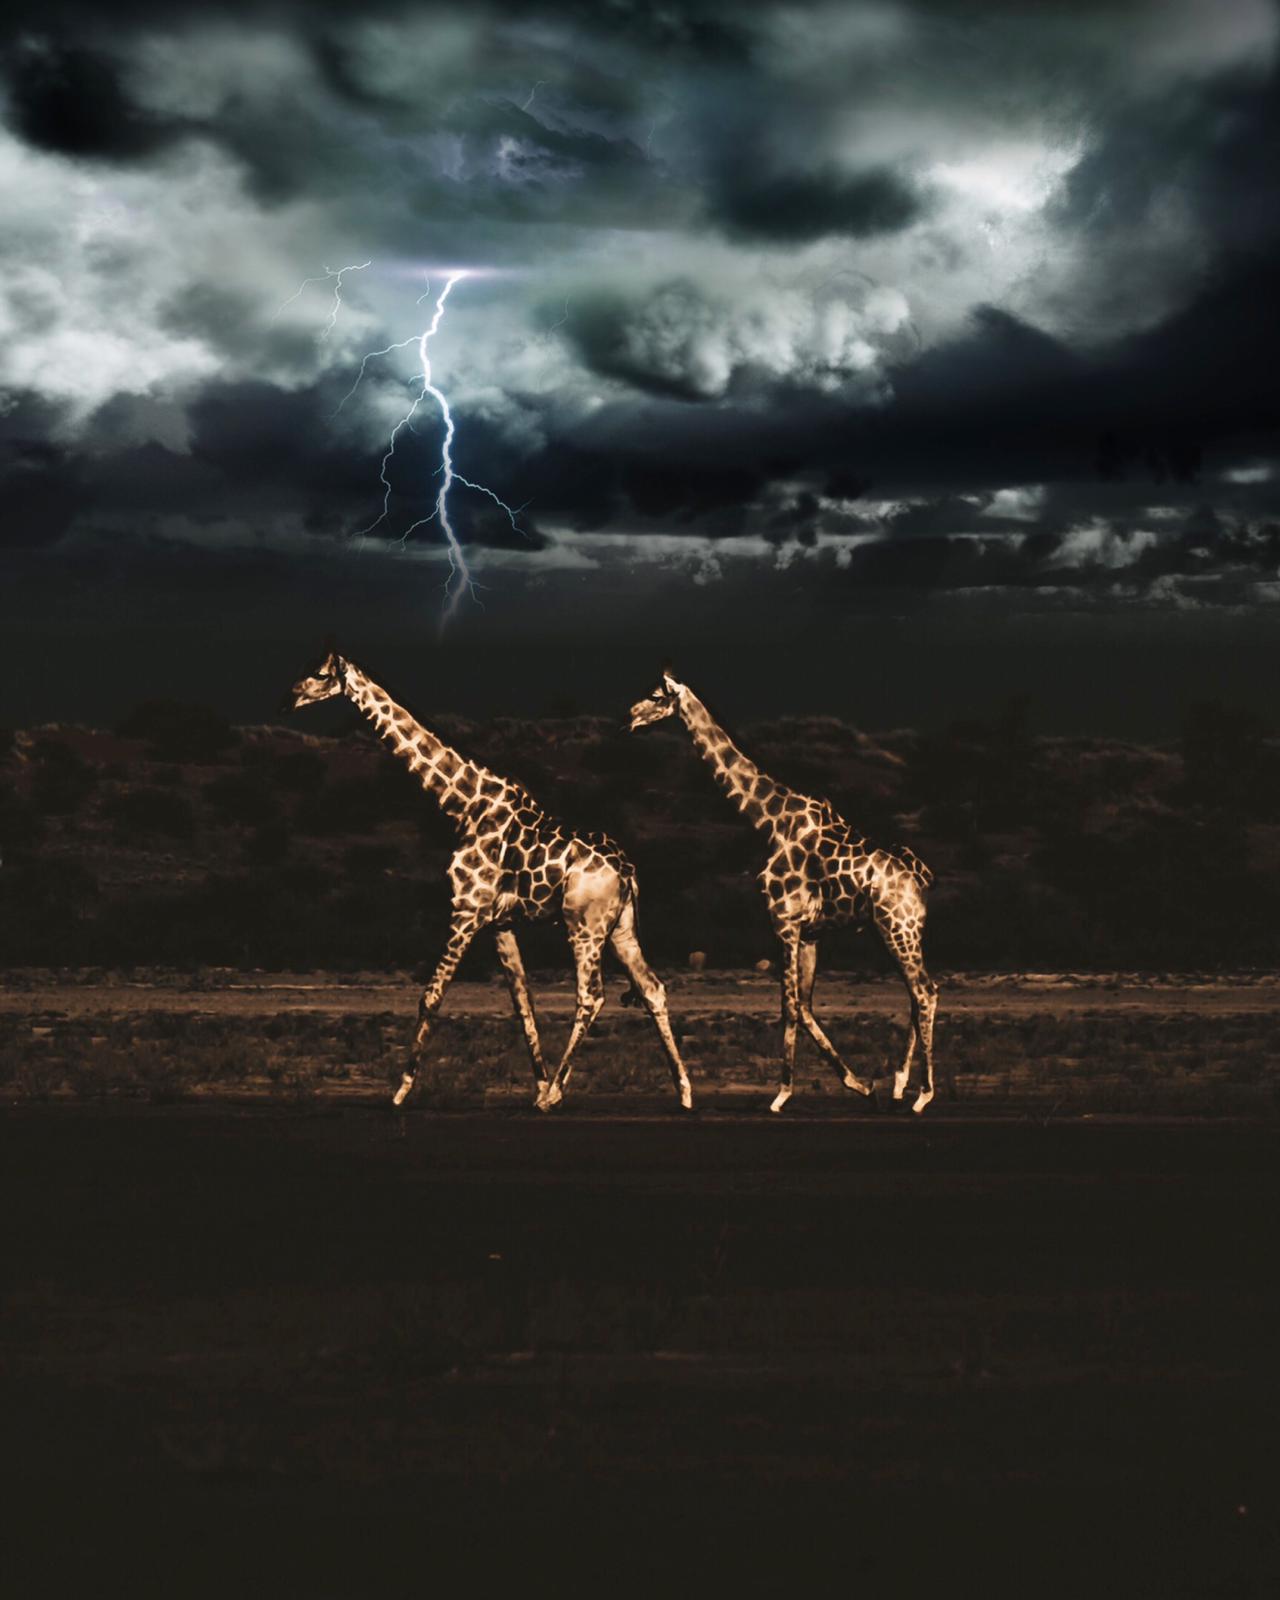 Bagatelle Lodge - Kalahari Game Ranch - Namibia - Giraffes and lightning